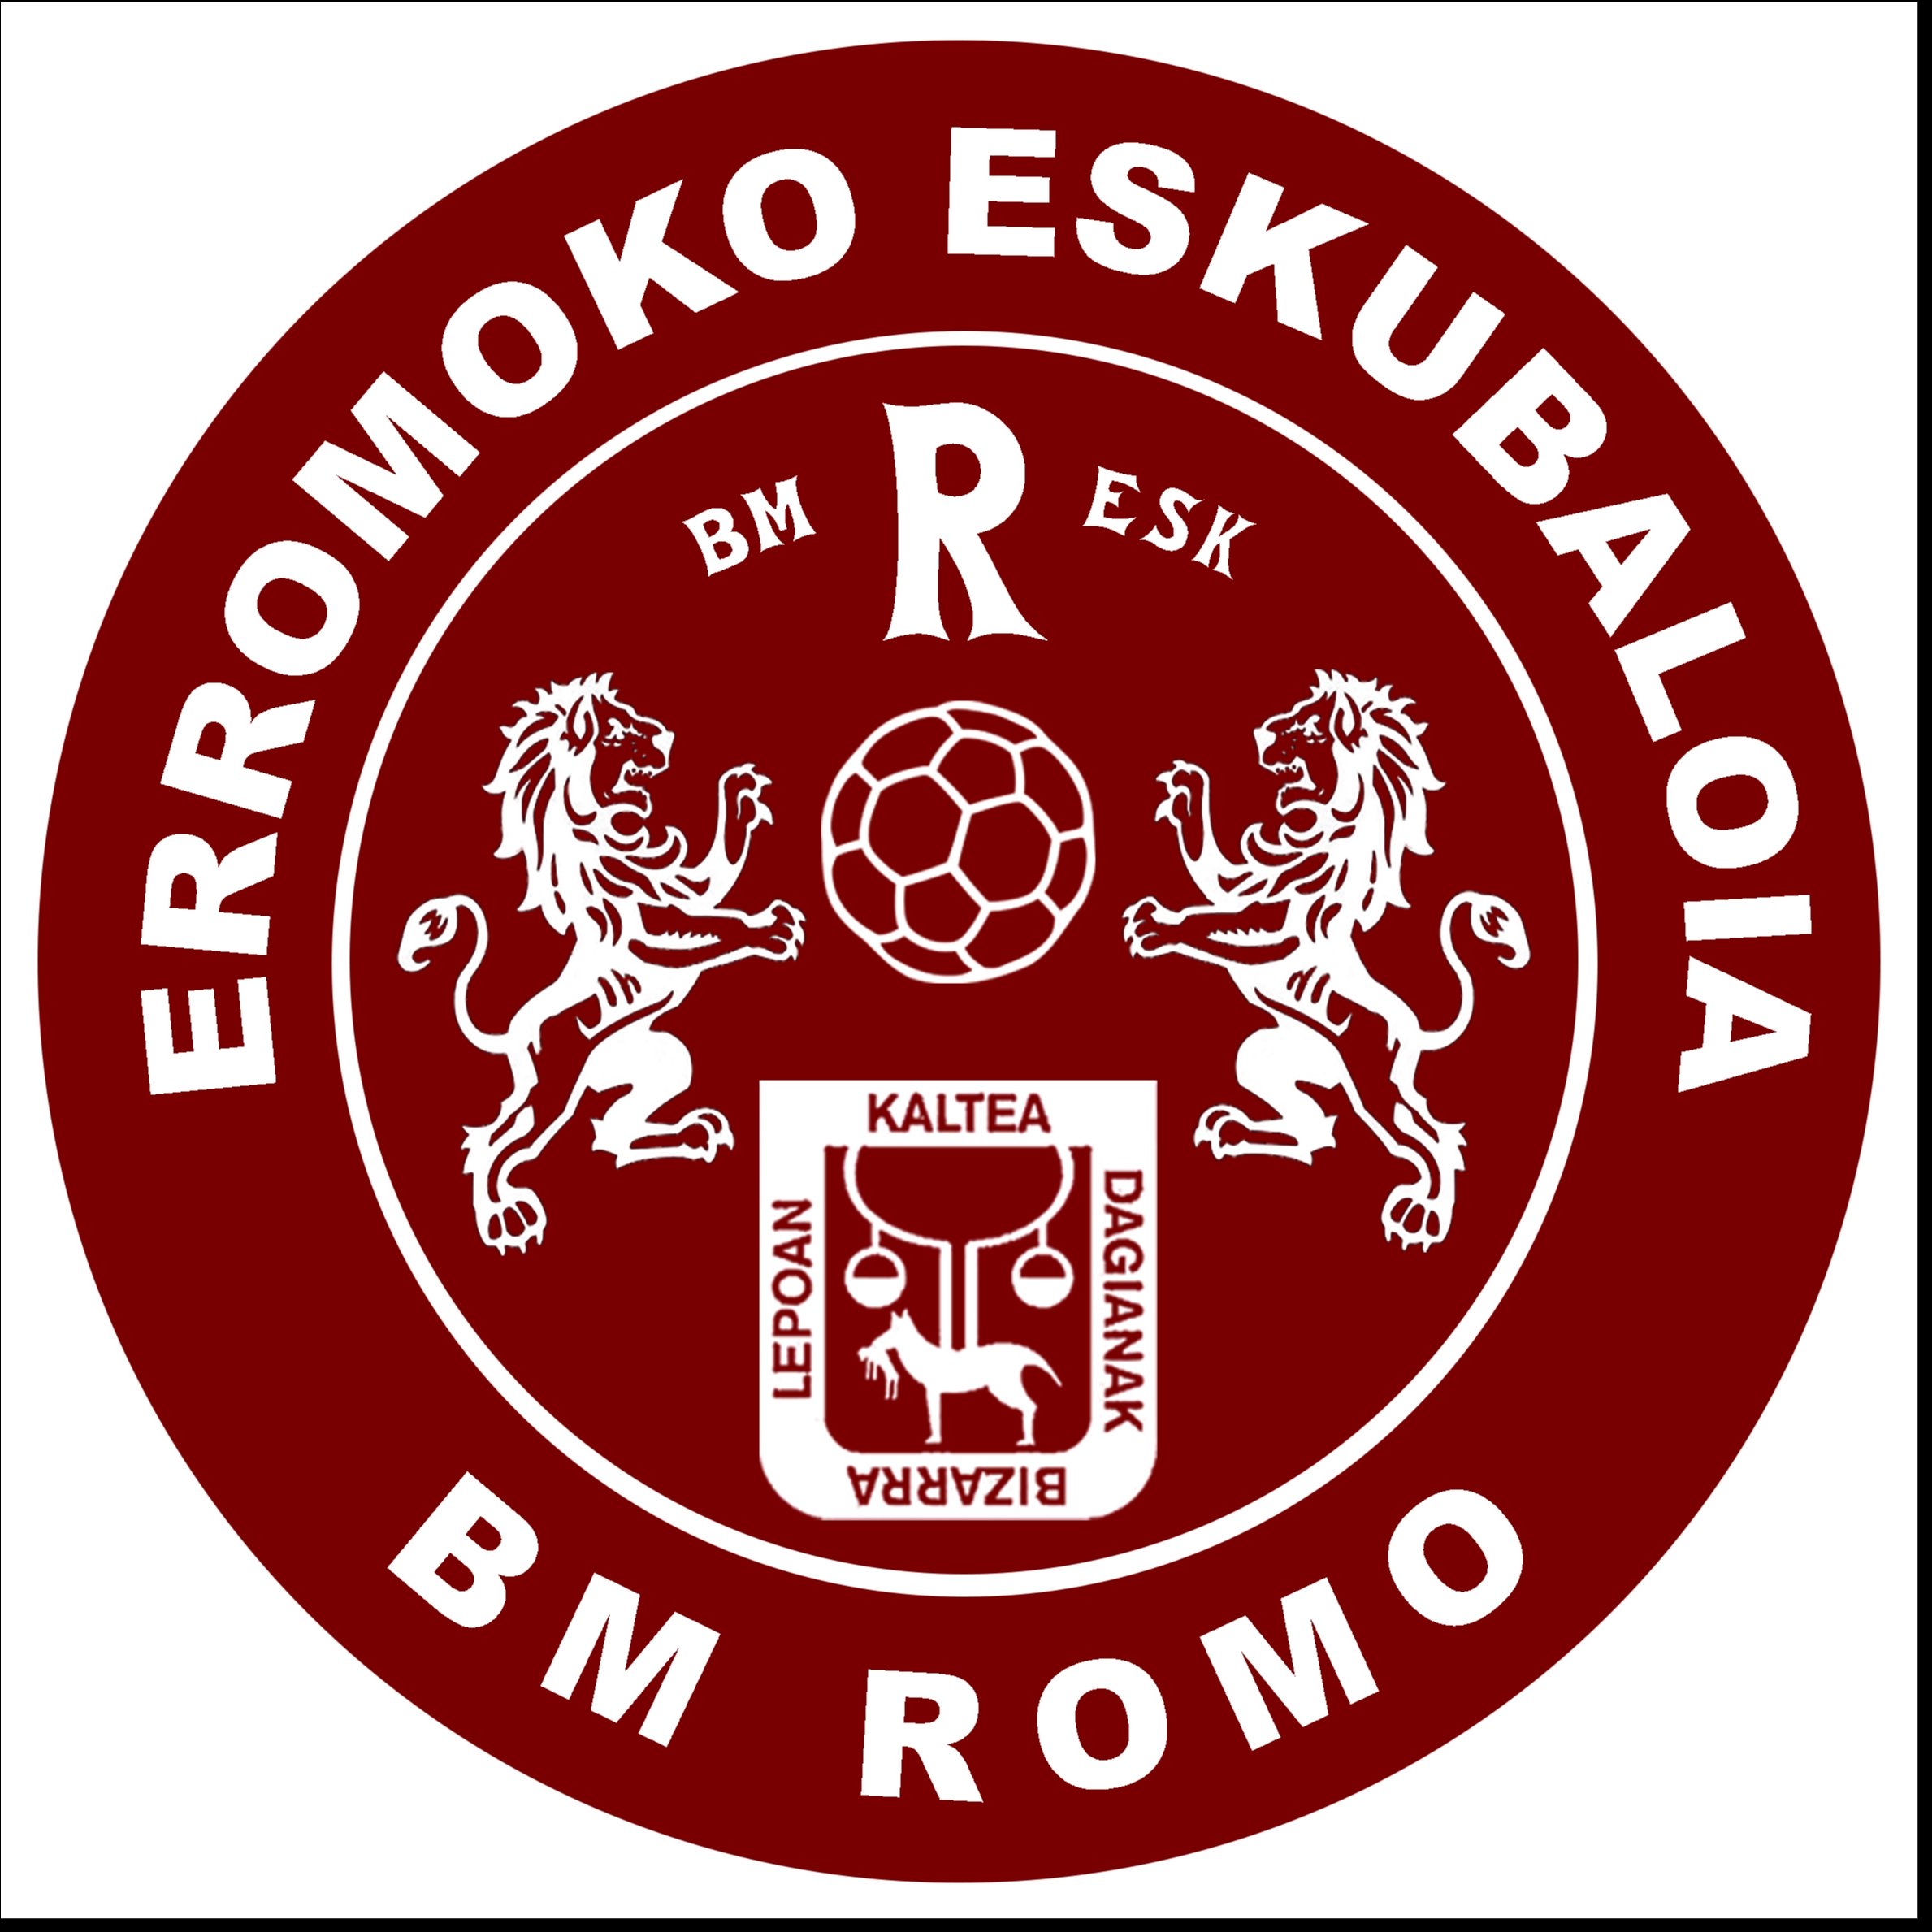 CLUB BALONMANO ROMO - ERROMOKO ESKUBALOIA